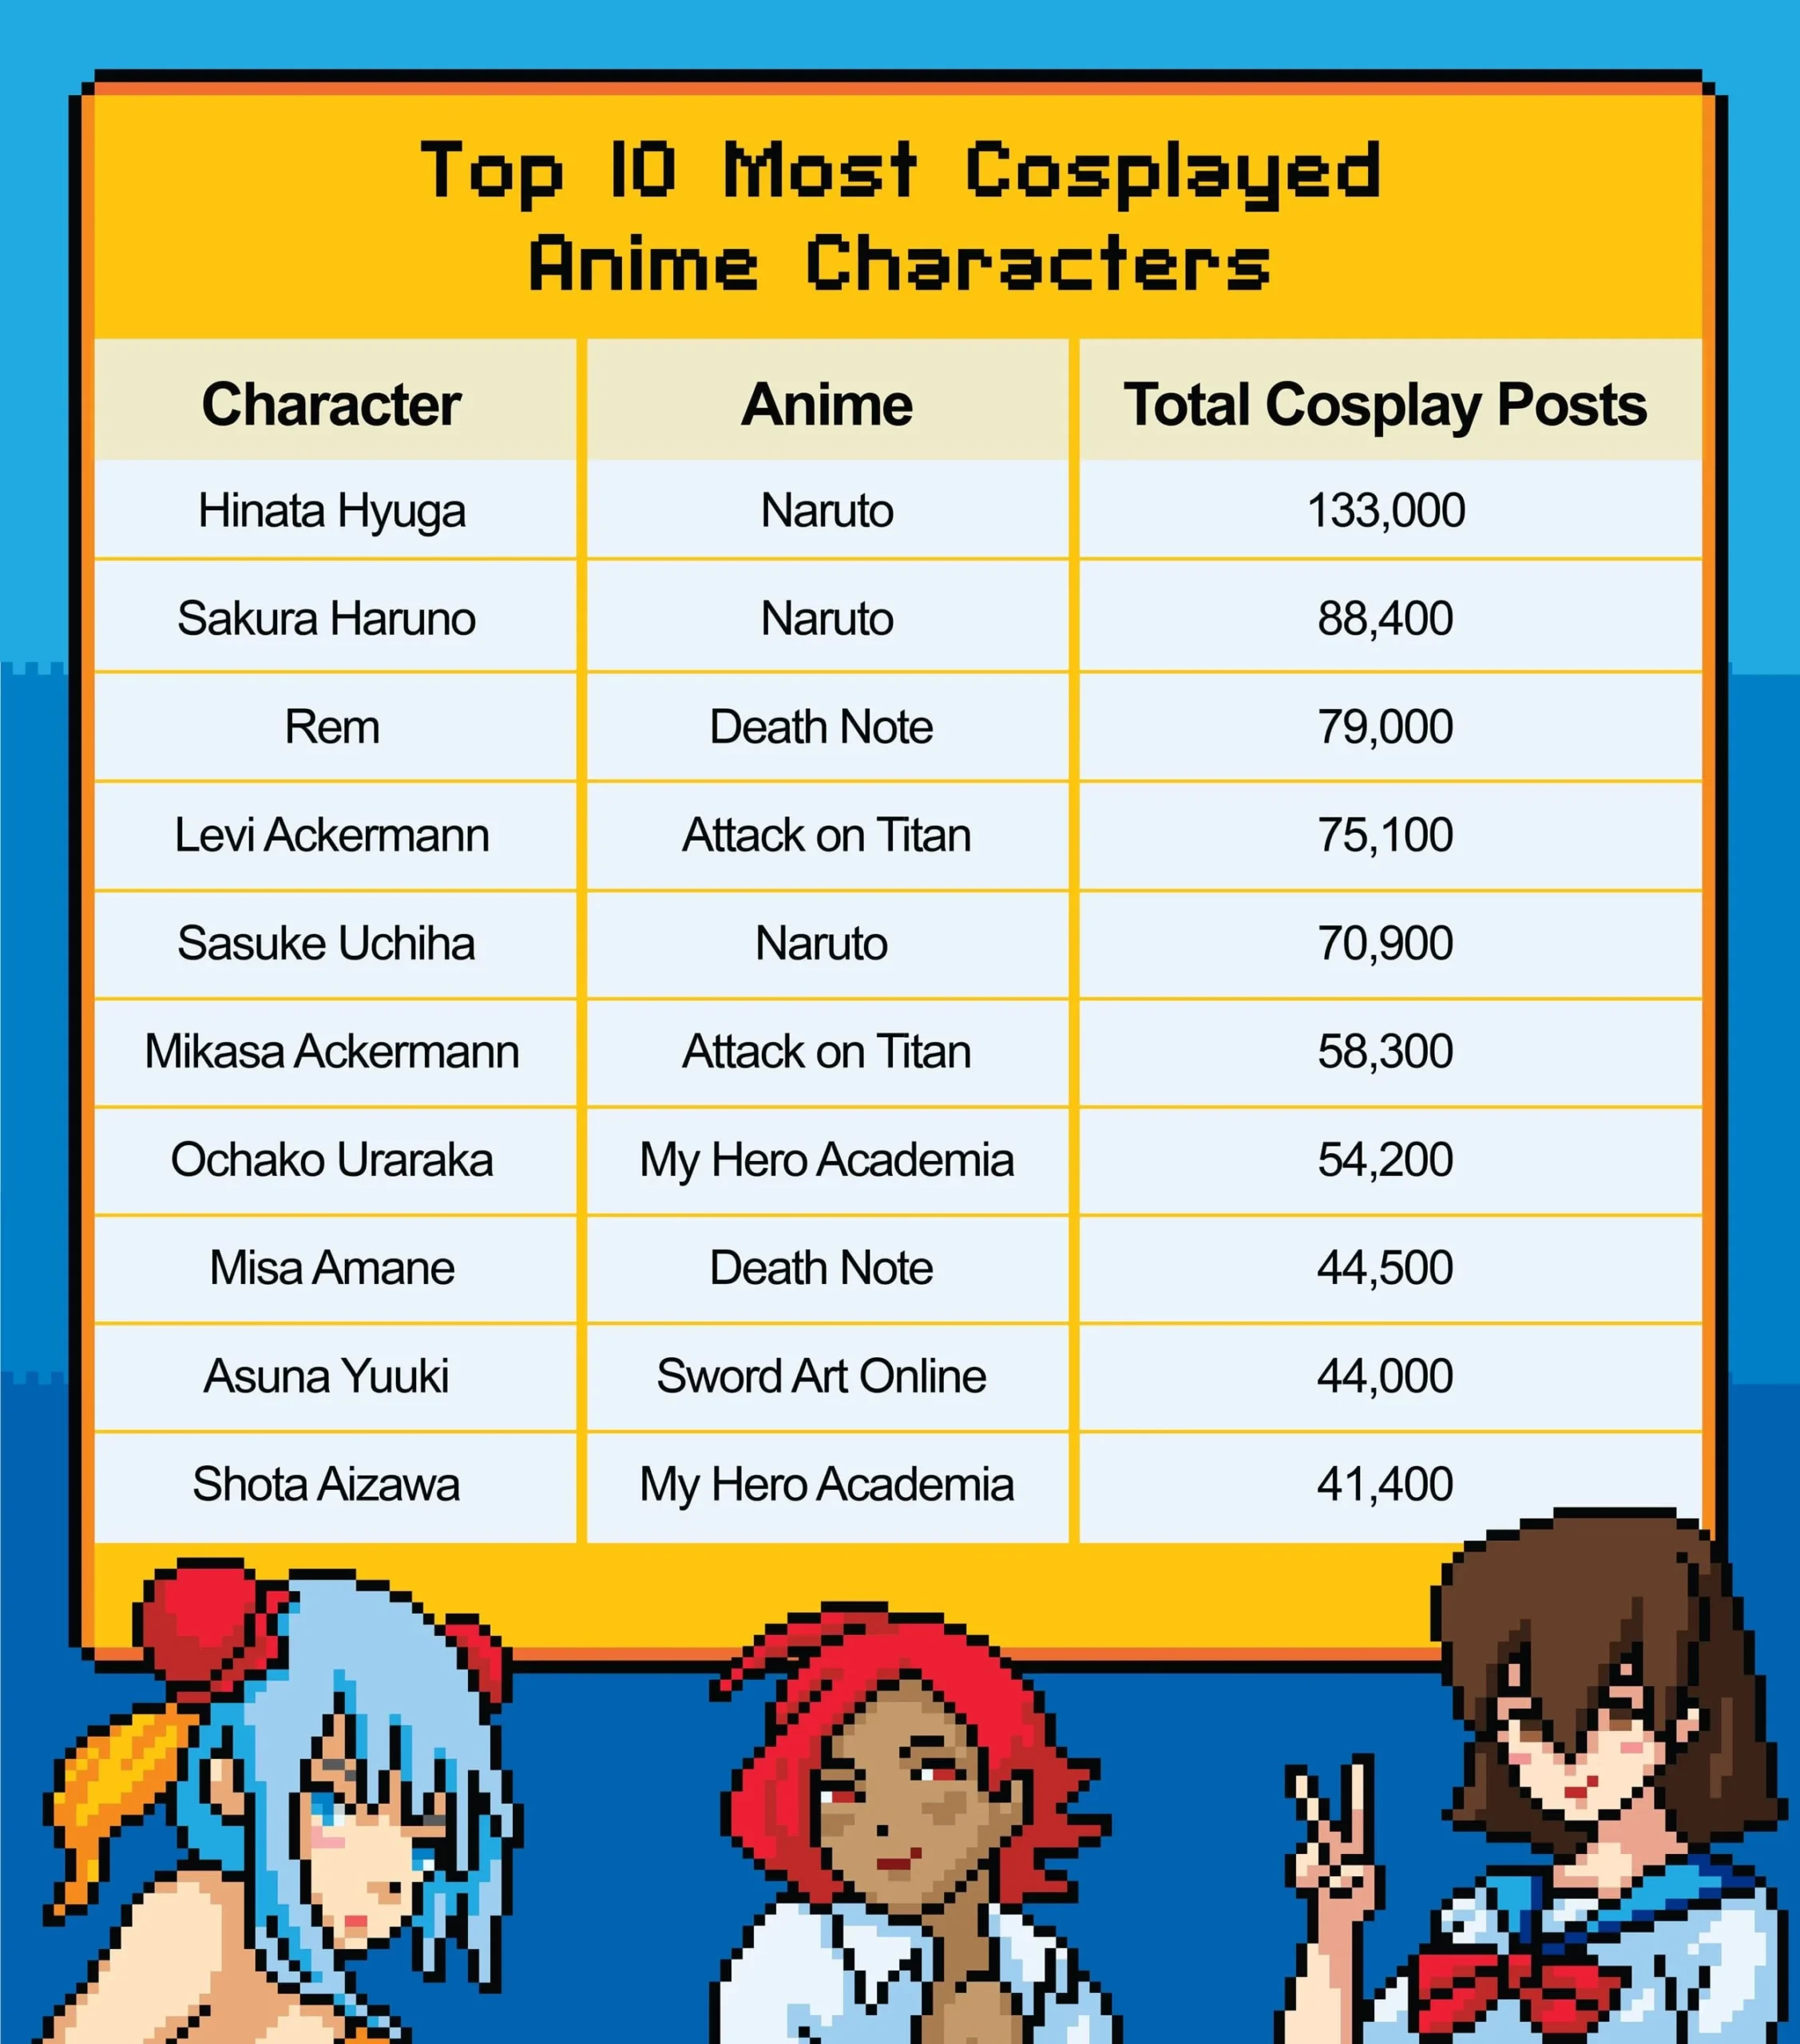 Qual o anime mais popular entre os cosplayers?